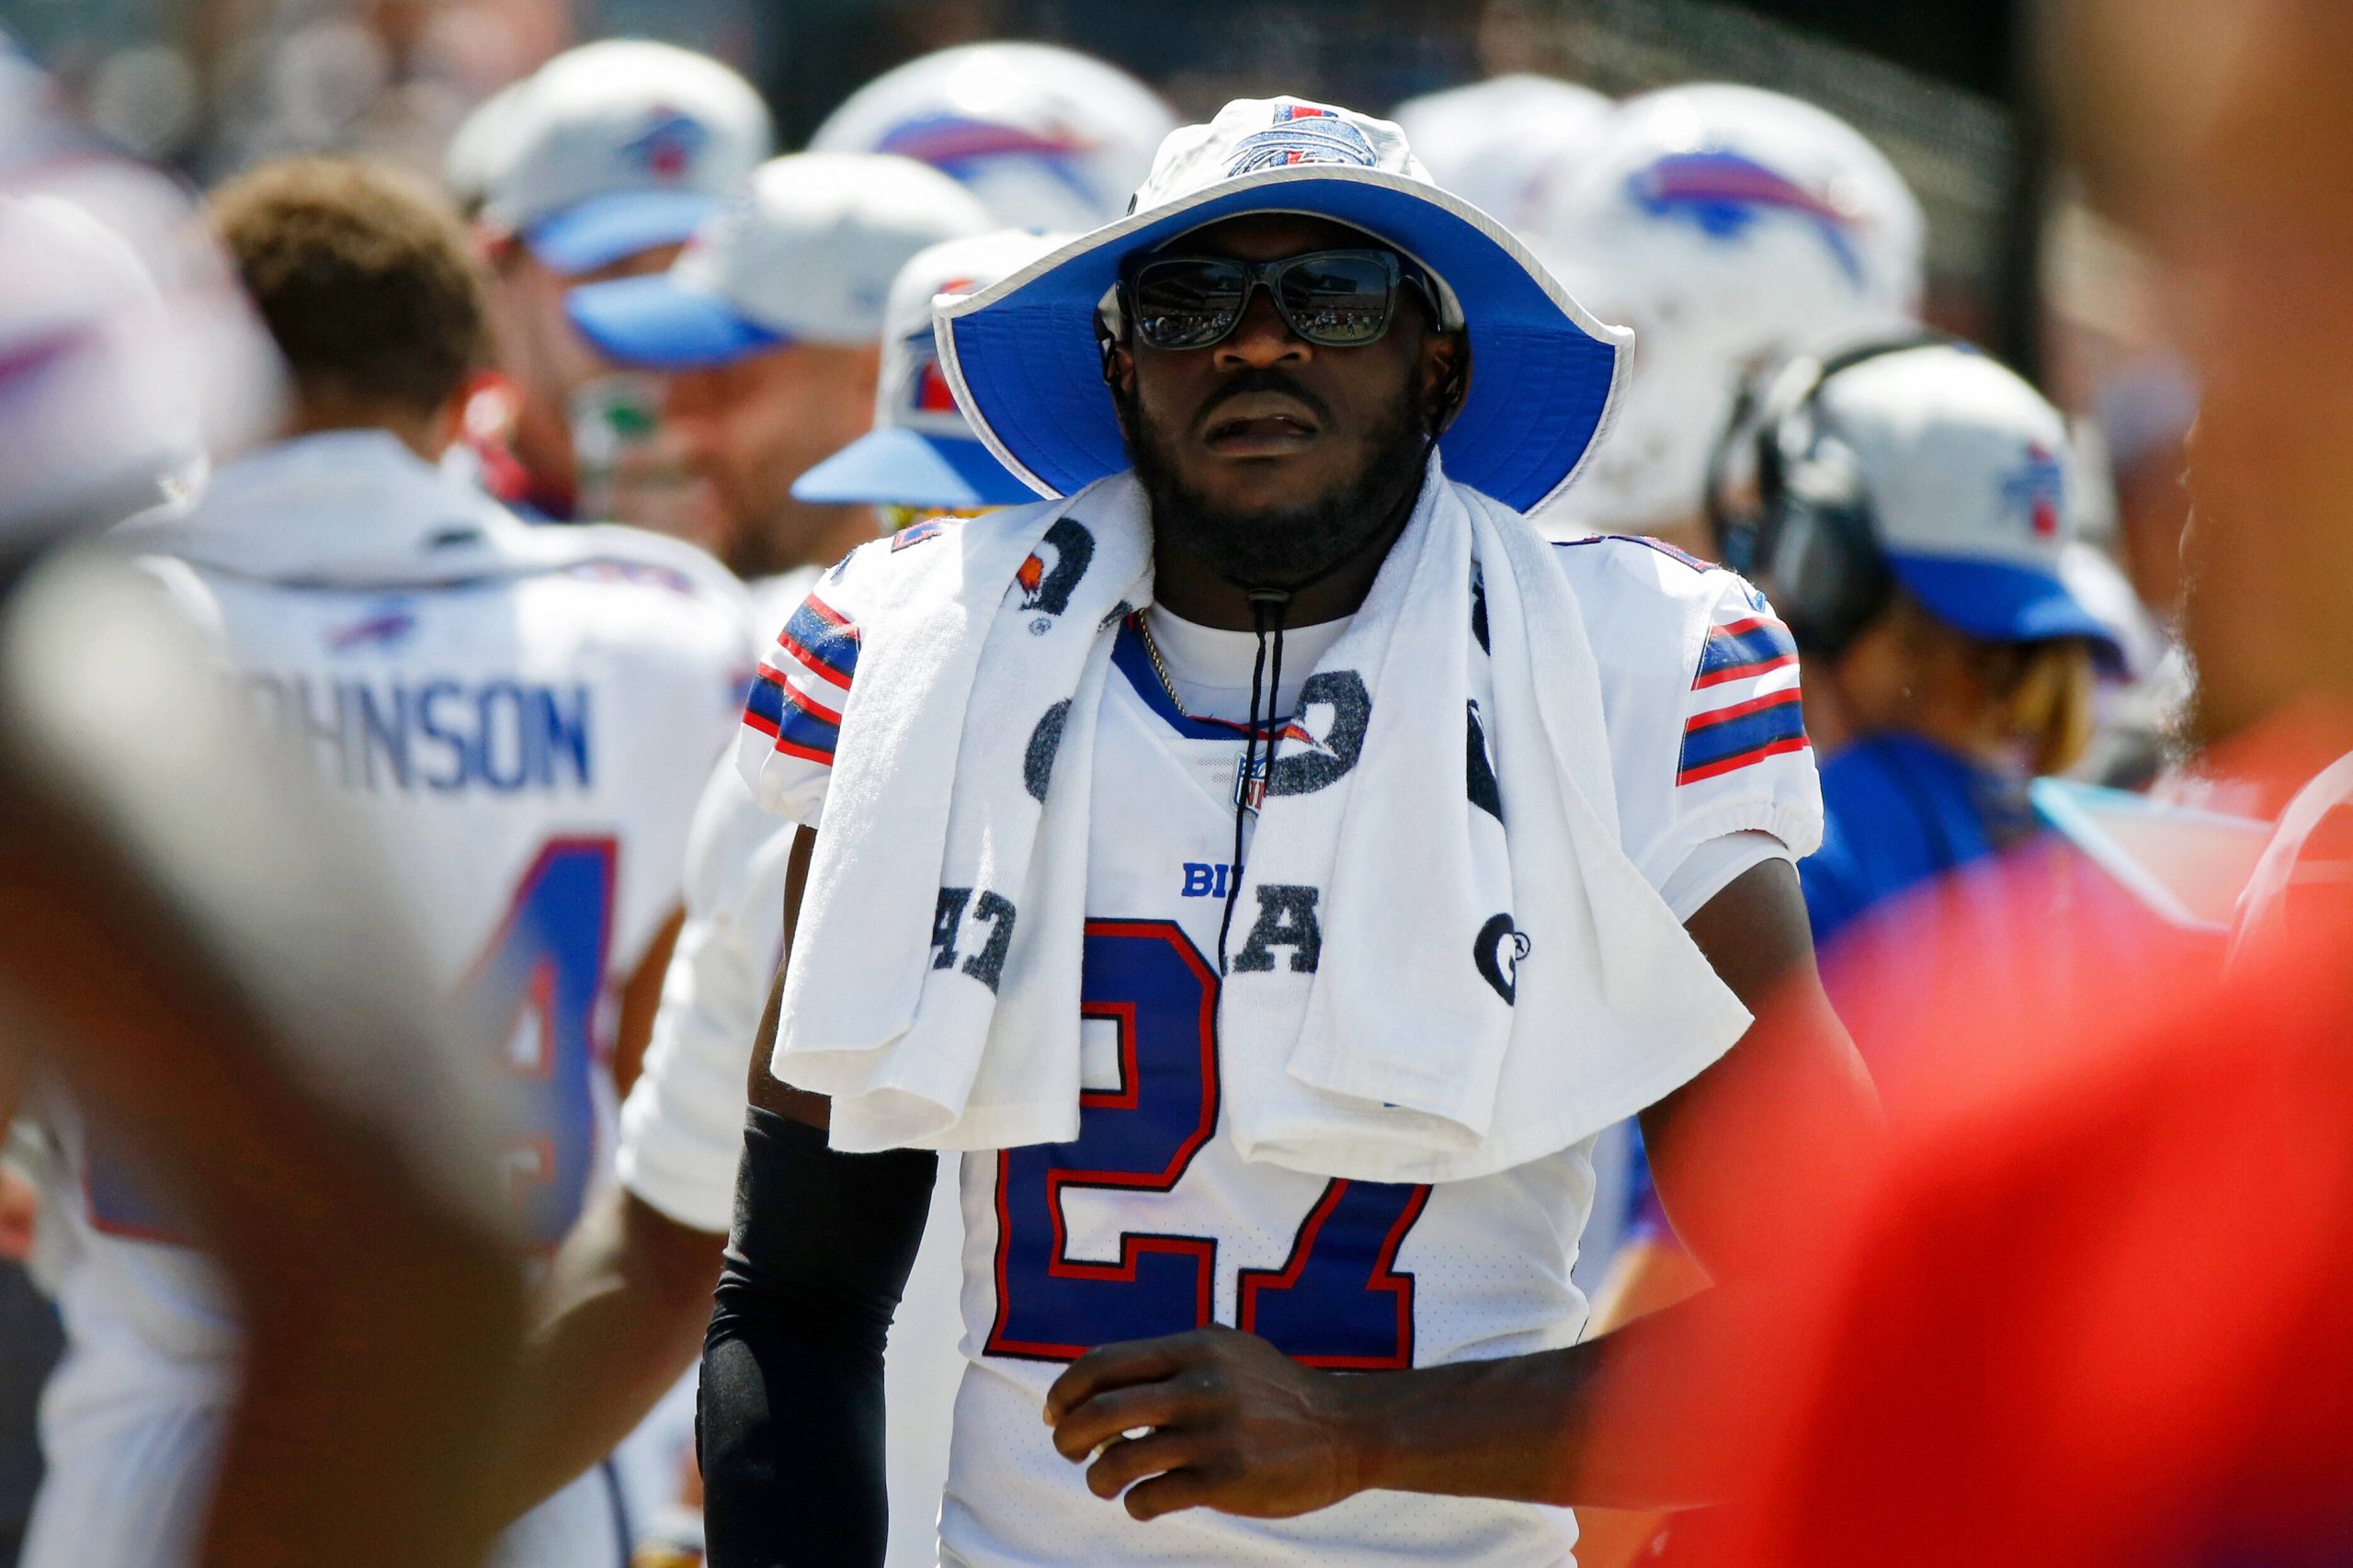 FootballR - NFL - Ein Spieler der Buffalo Bills, der einen Hut und eine Sonnenbrille trägt, erleidet einen Achillessehnenriss und fällt daher für die Saison aus. Tre'Davious White